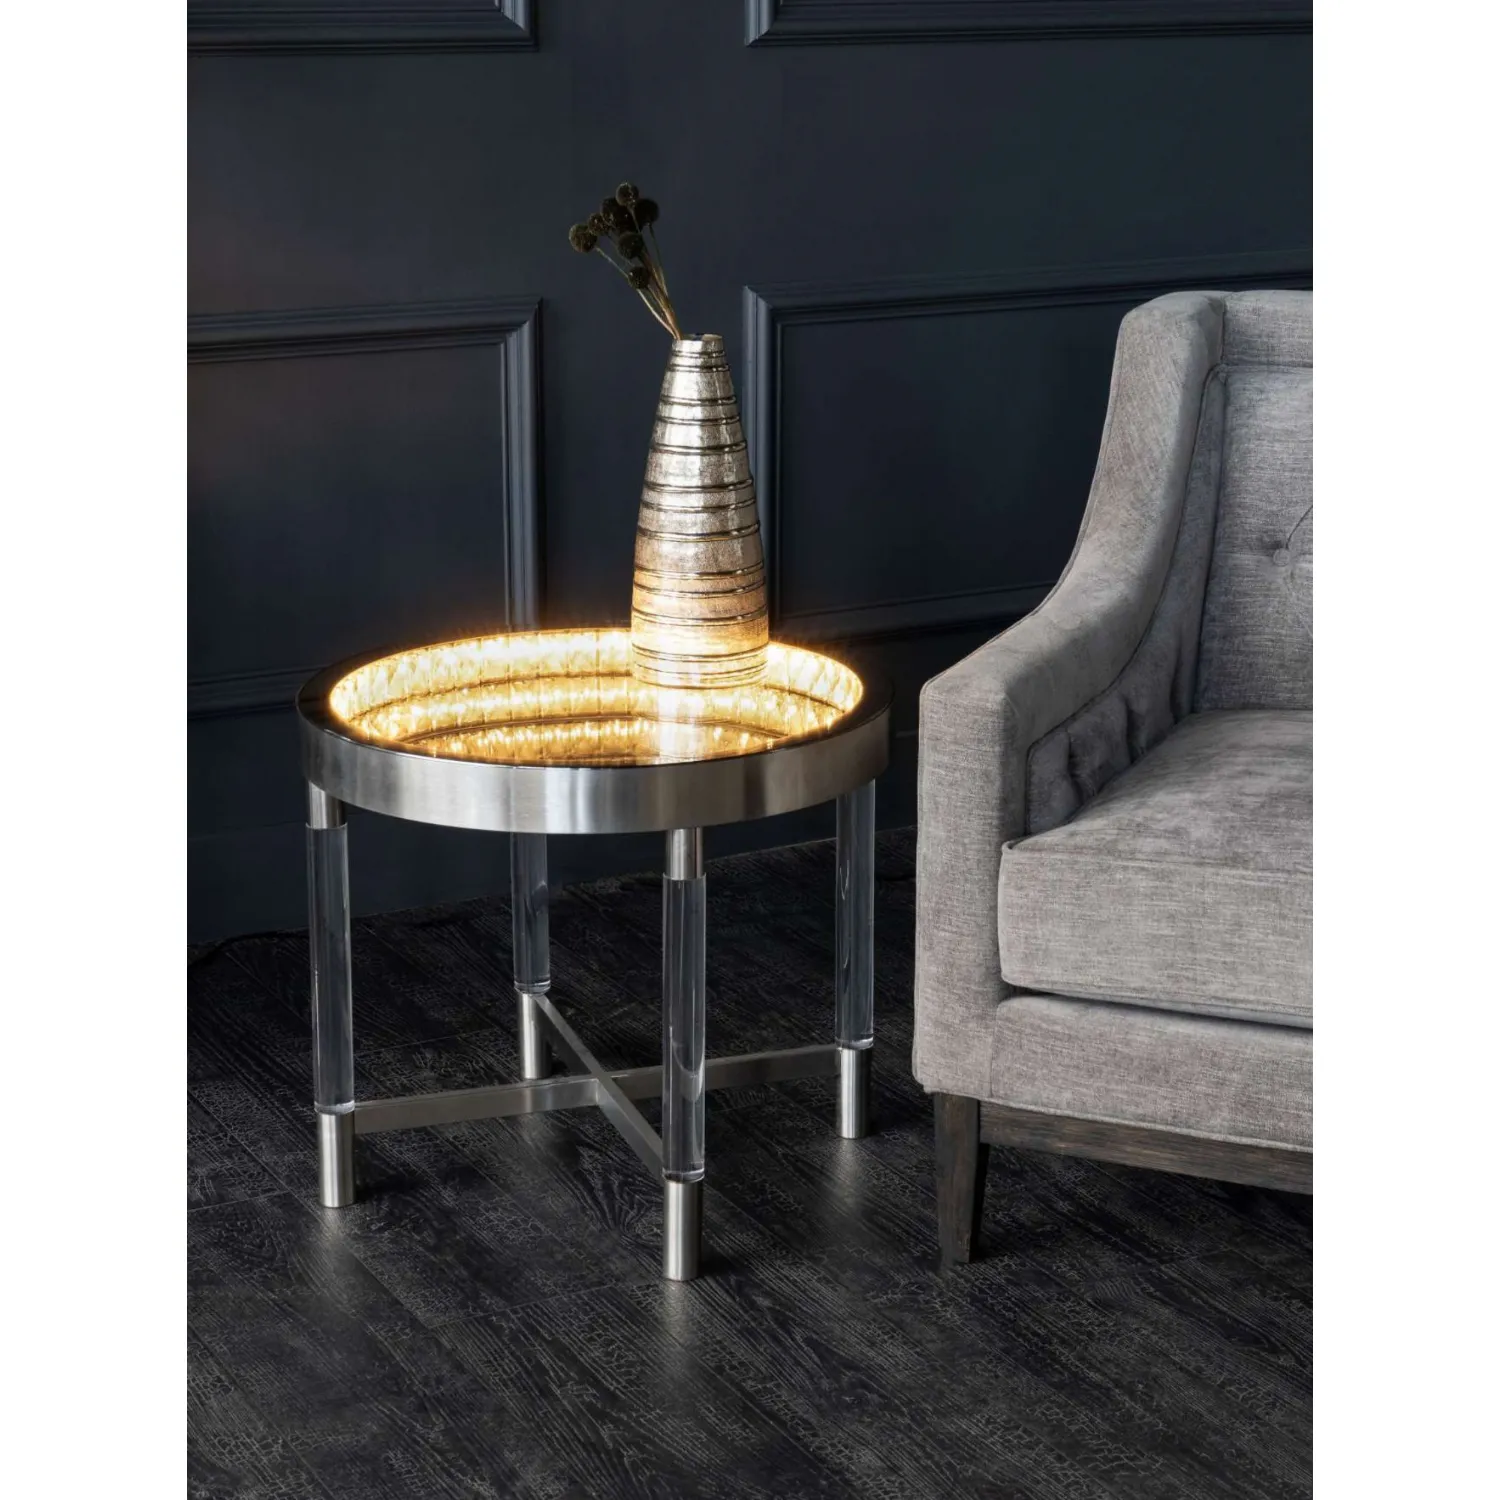 Davenport LED Illuminated Round Side Table Acrylic Legs